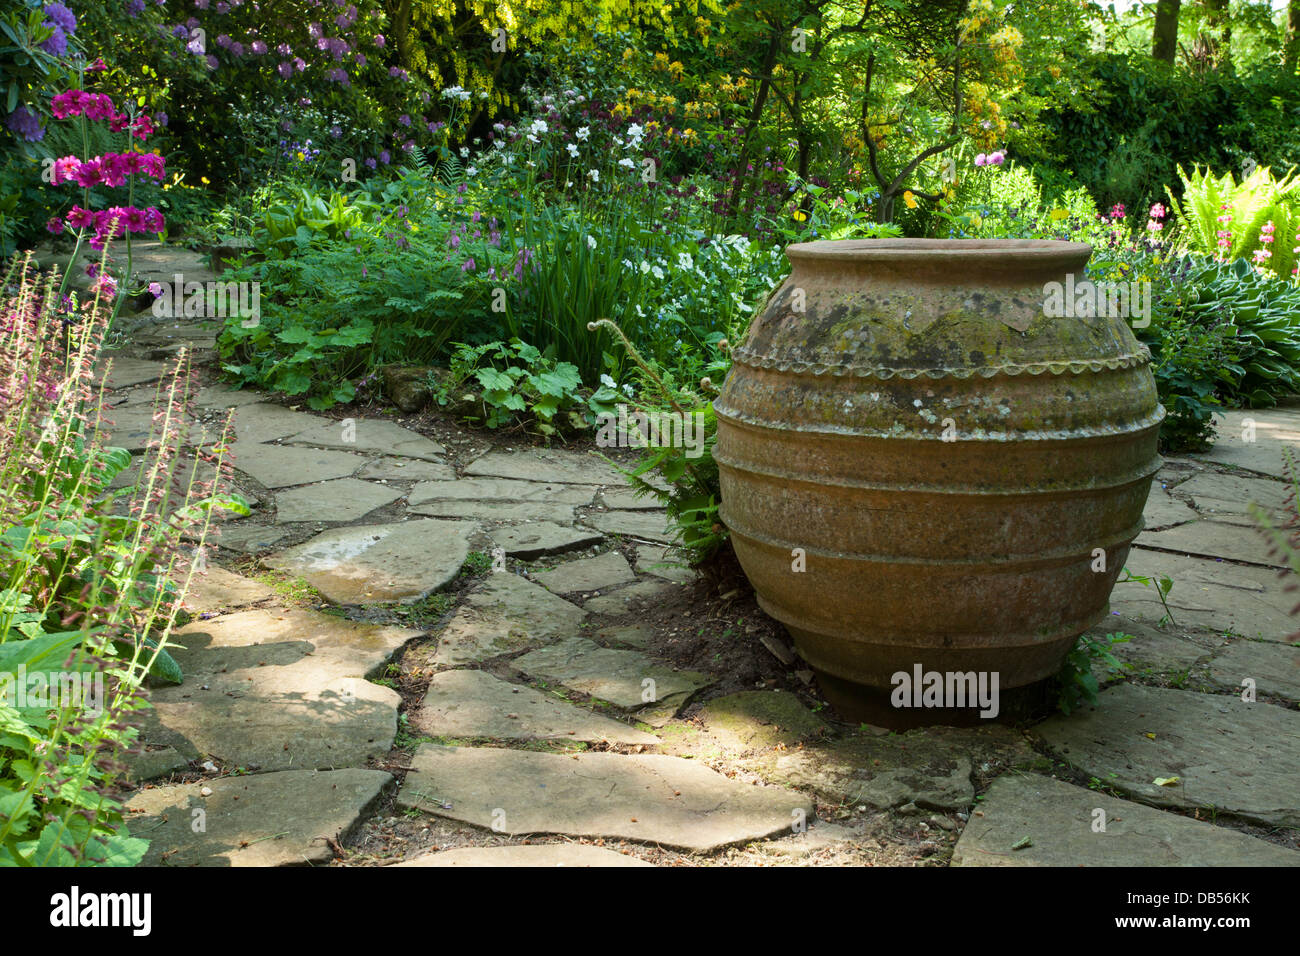 Un grand pot en terre cuite d'ornement se trouve sur pavage dans le jardin d'eau de Coton Manor gardens, Northamptonshire, Angleterre Banque D'Images